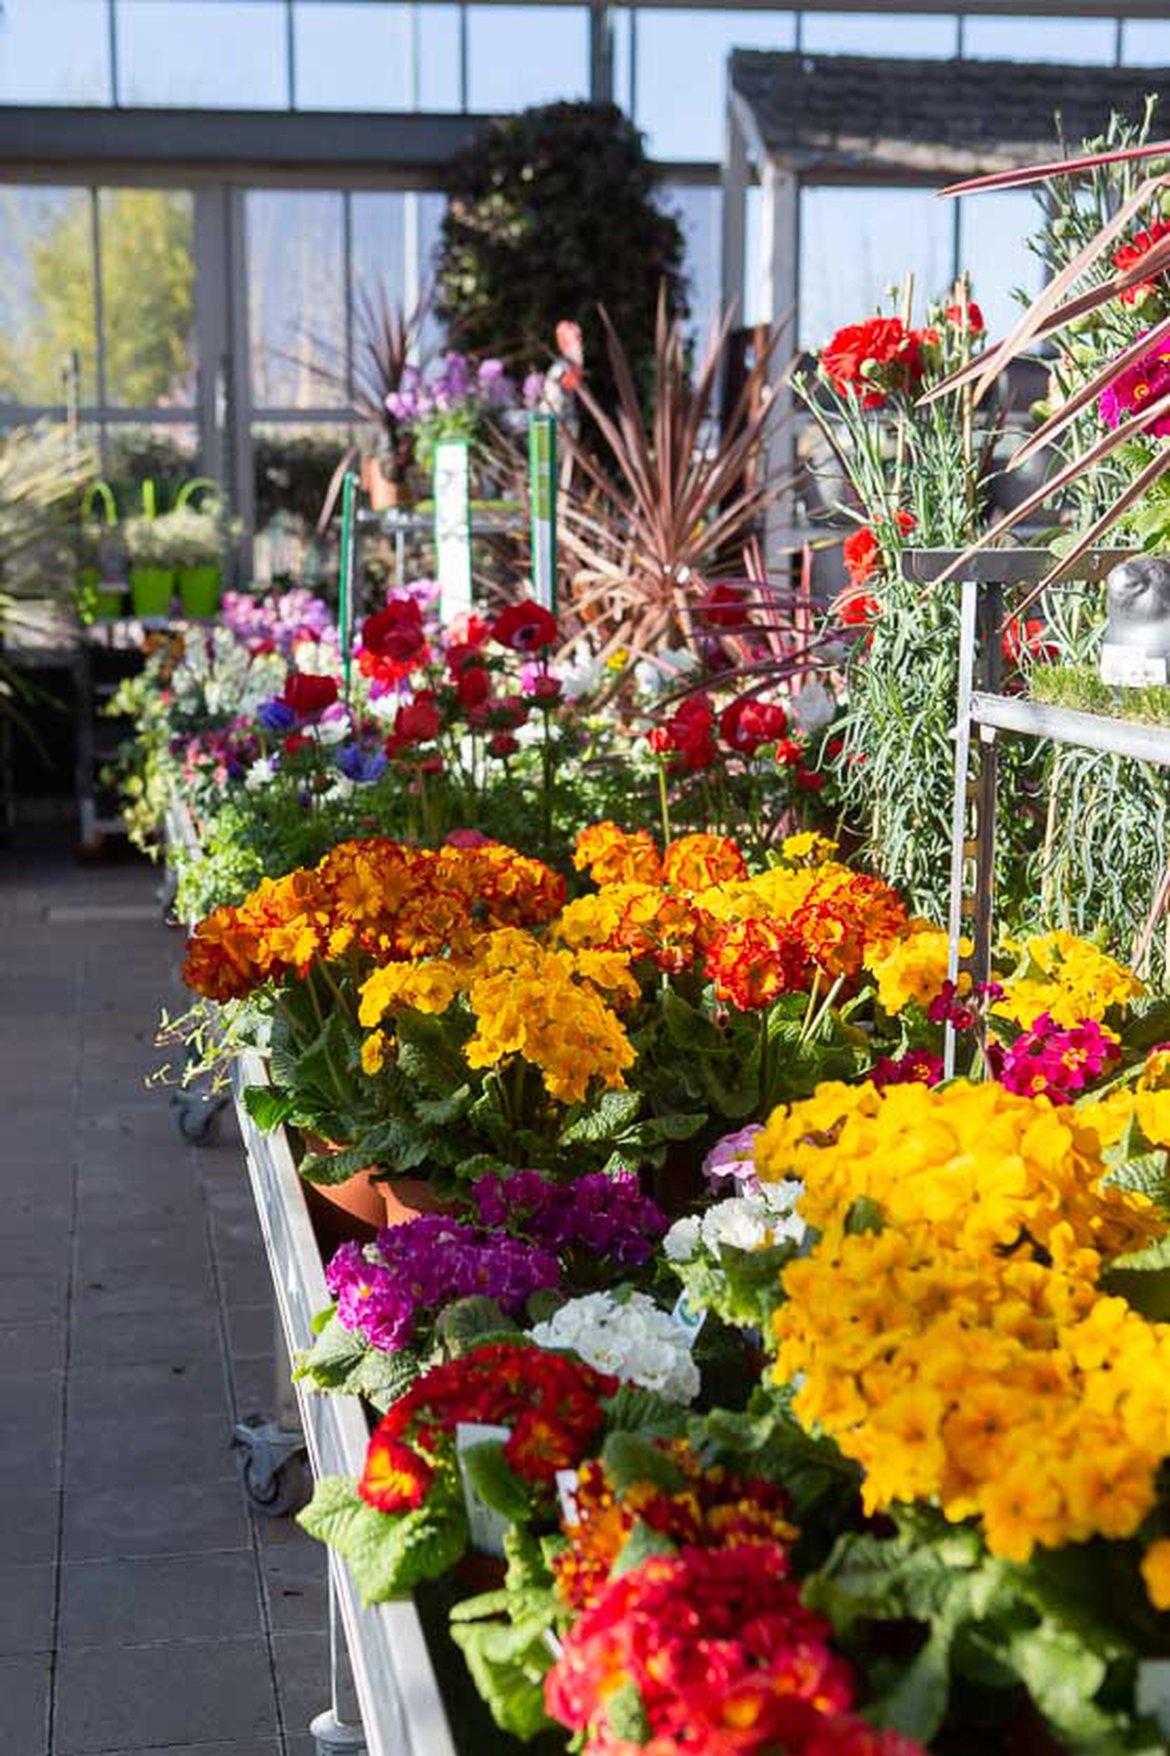 Le marché aux fleurs du magasin Schilliger Garden Centre à Matran Fribourg Suisse